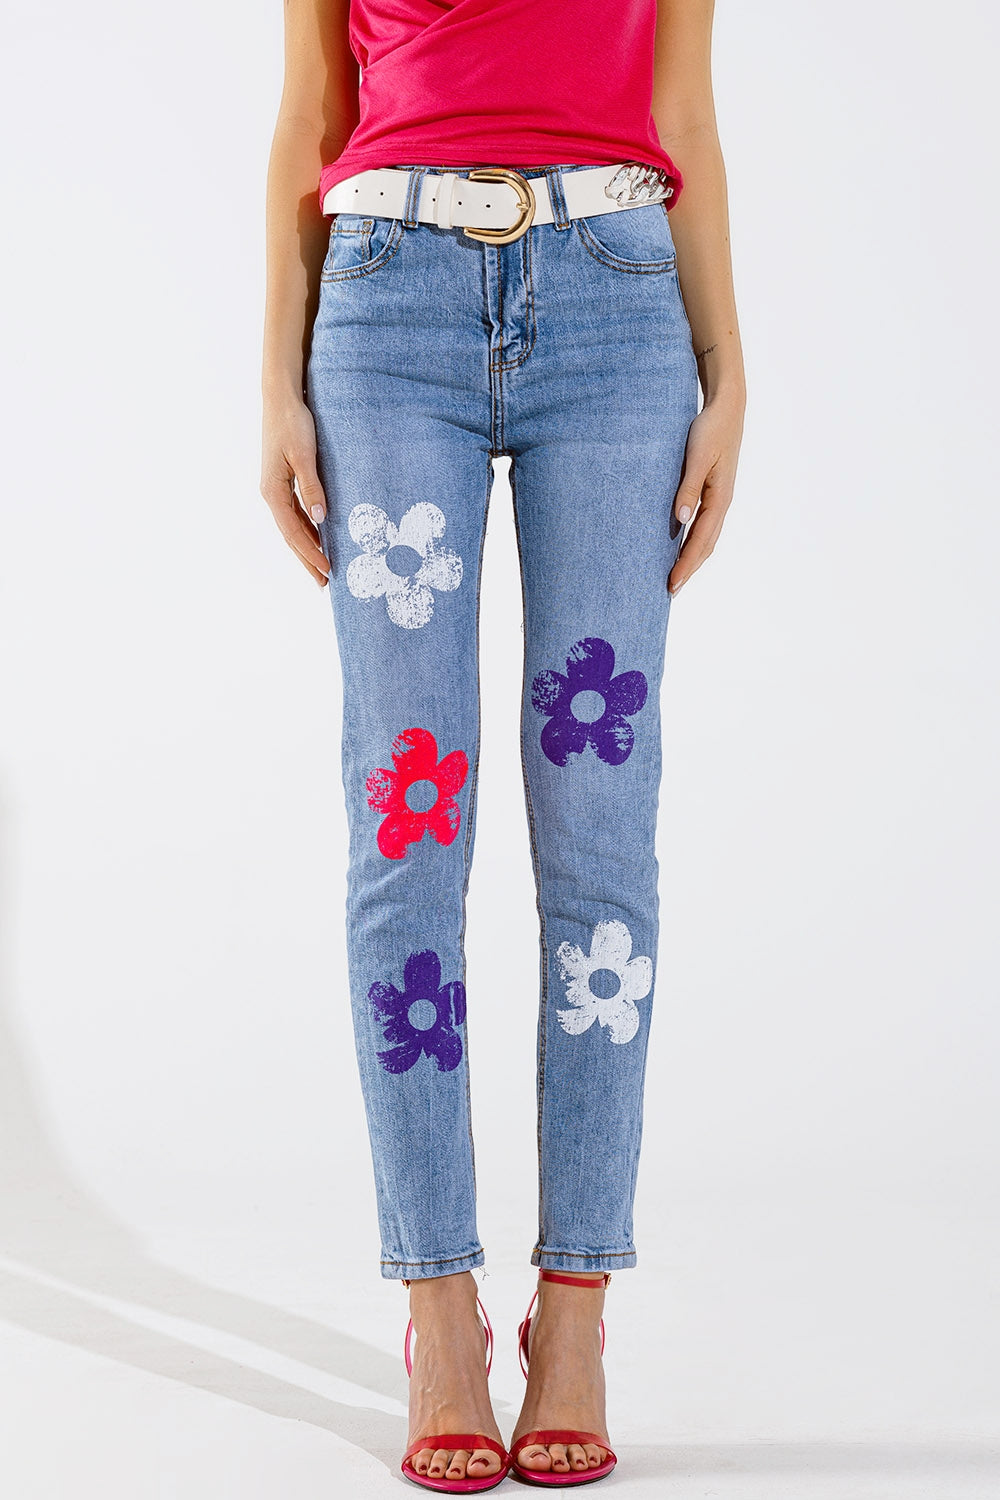 Q2 Jeans 5 tasche skinny con dettaglio floreale